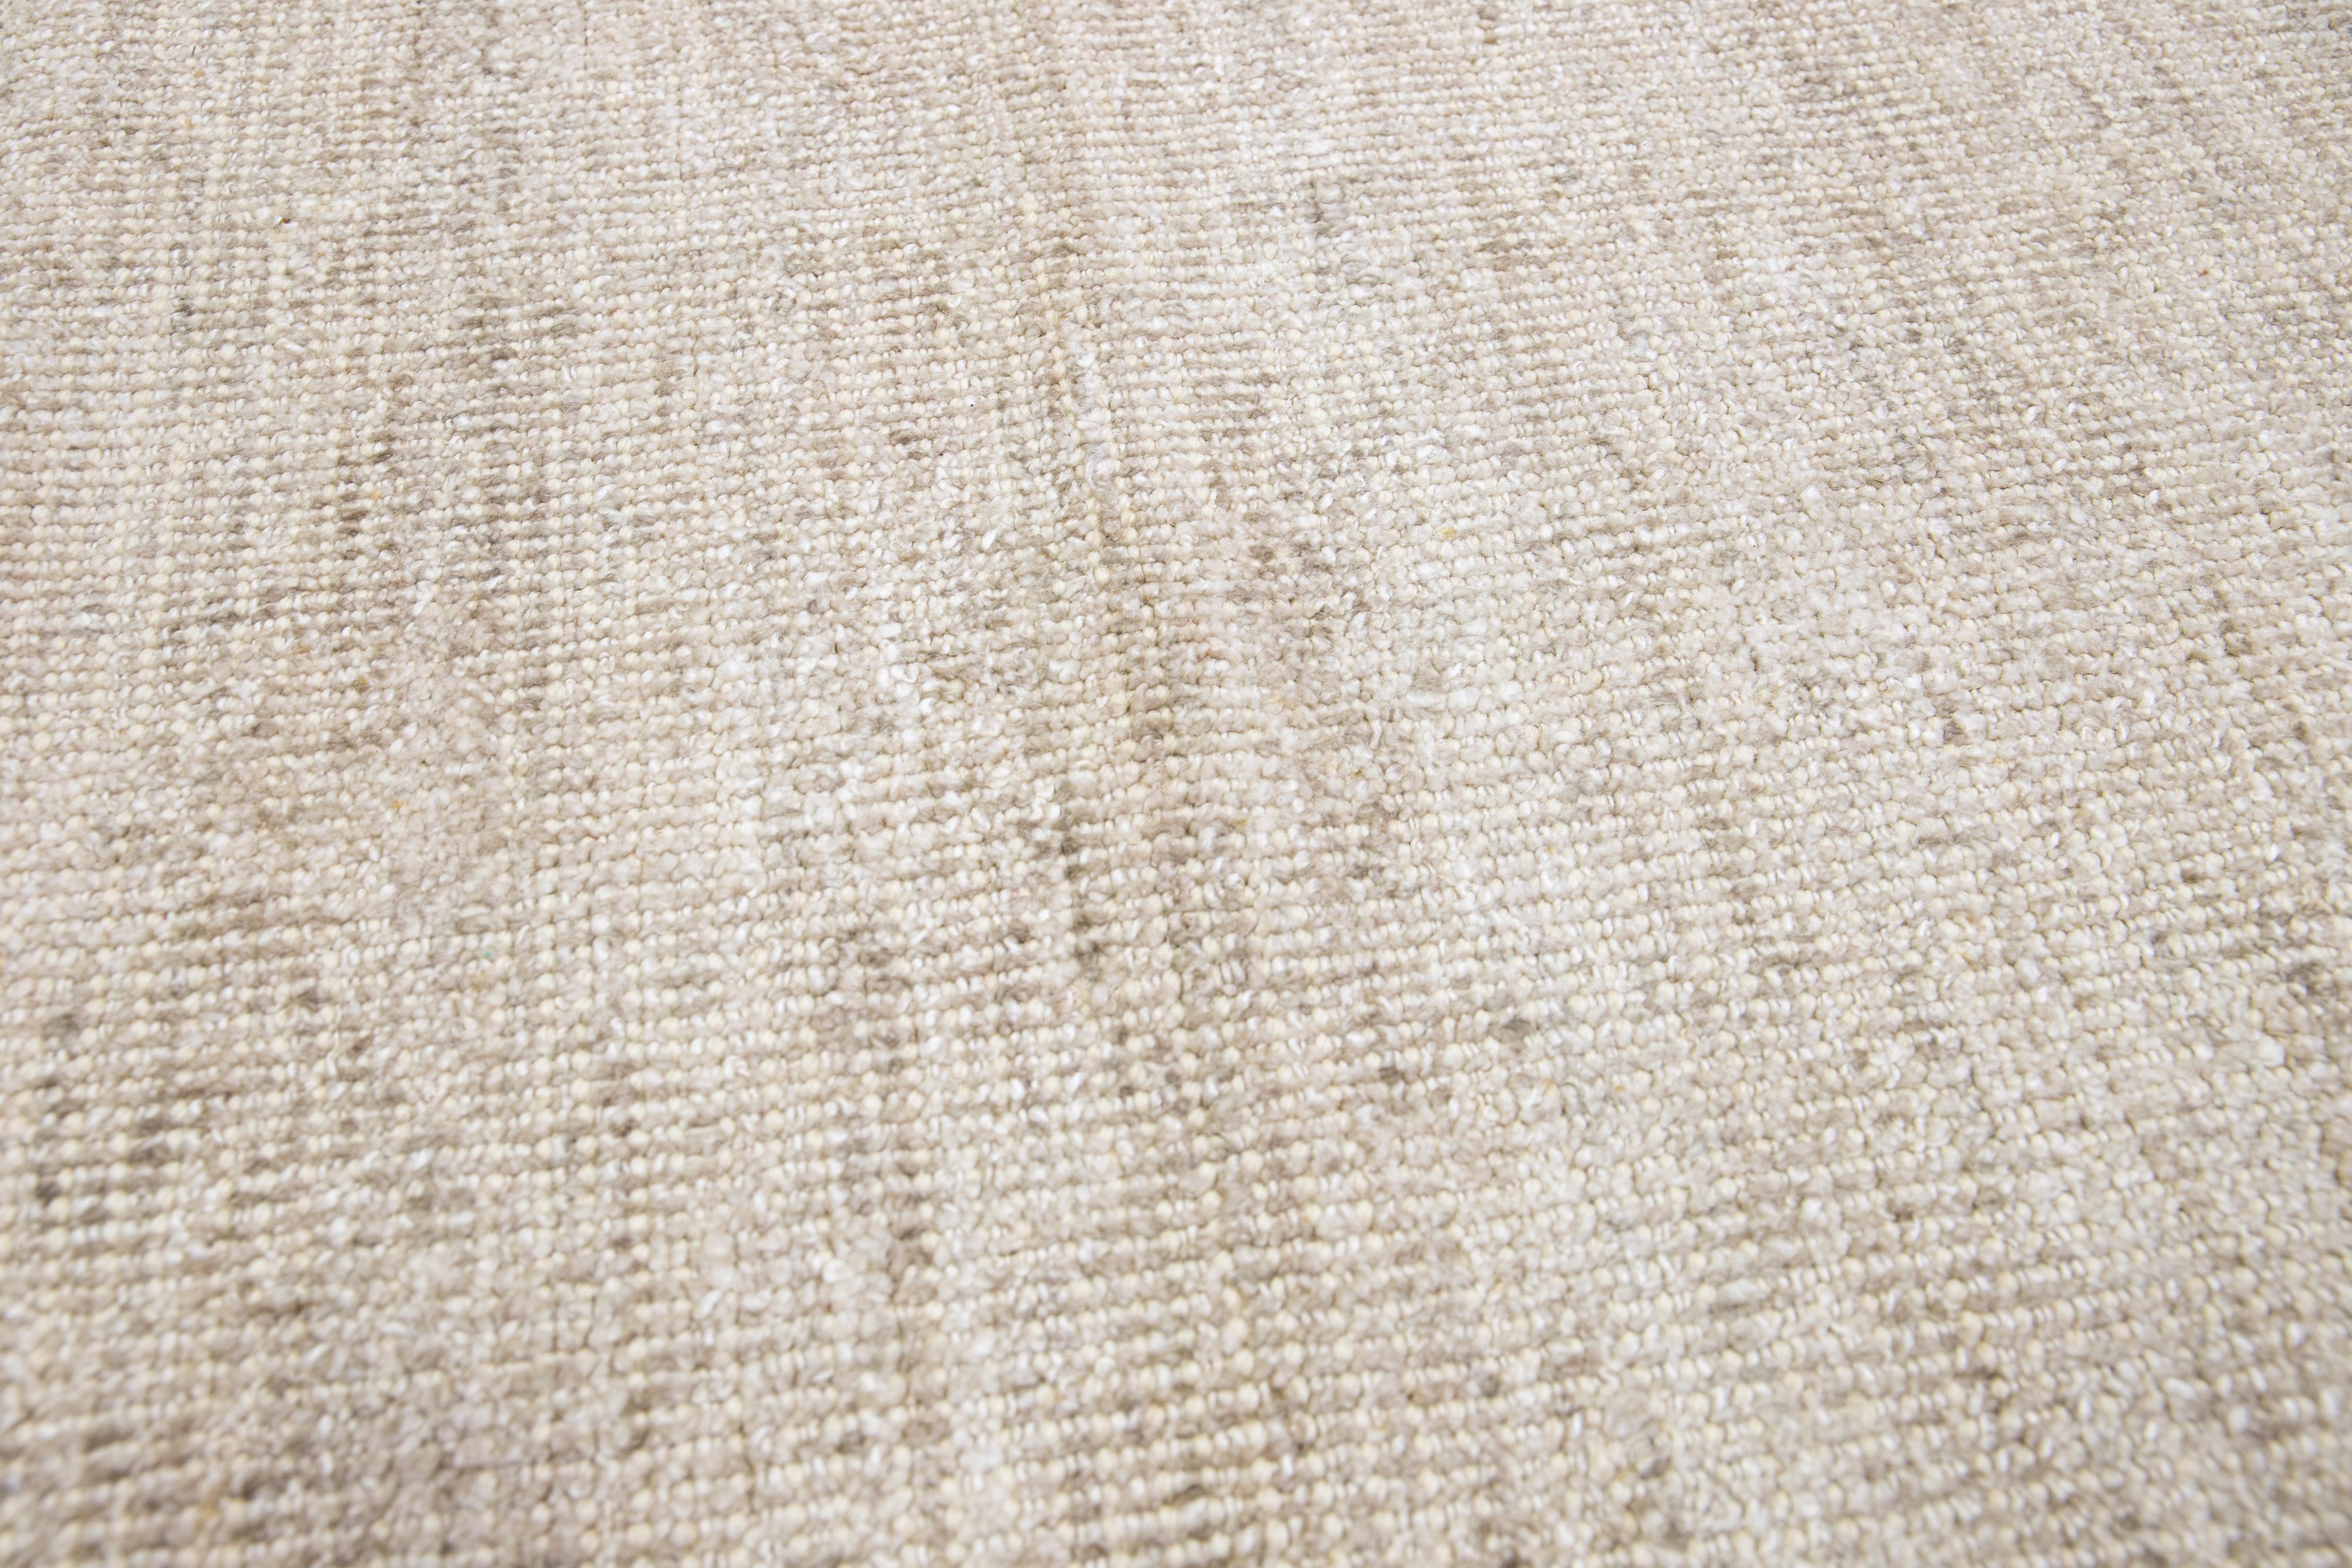 Wunderschöner handgefertigter indischer Rillenteppich aus Bambus und Seide von Square Apadana mit einem beigen Farbfeld. Dieser Teppich aus der Groove Collection hat ein unifarbenes Allover-Muster.

Dieser Teppich misst: 14'11